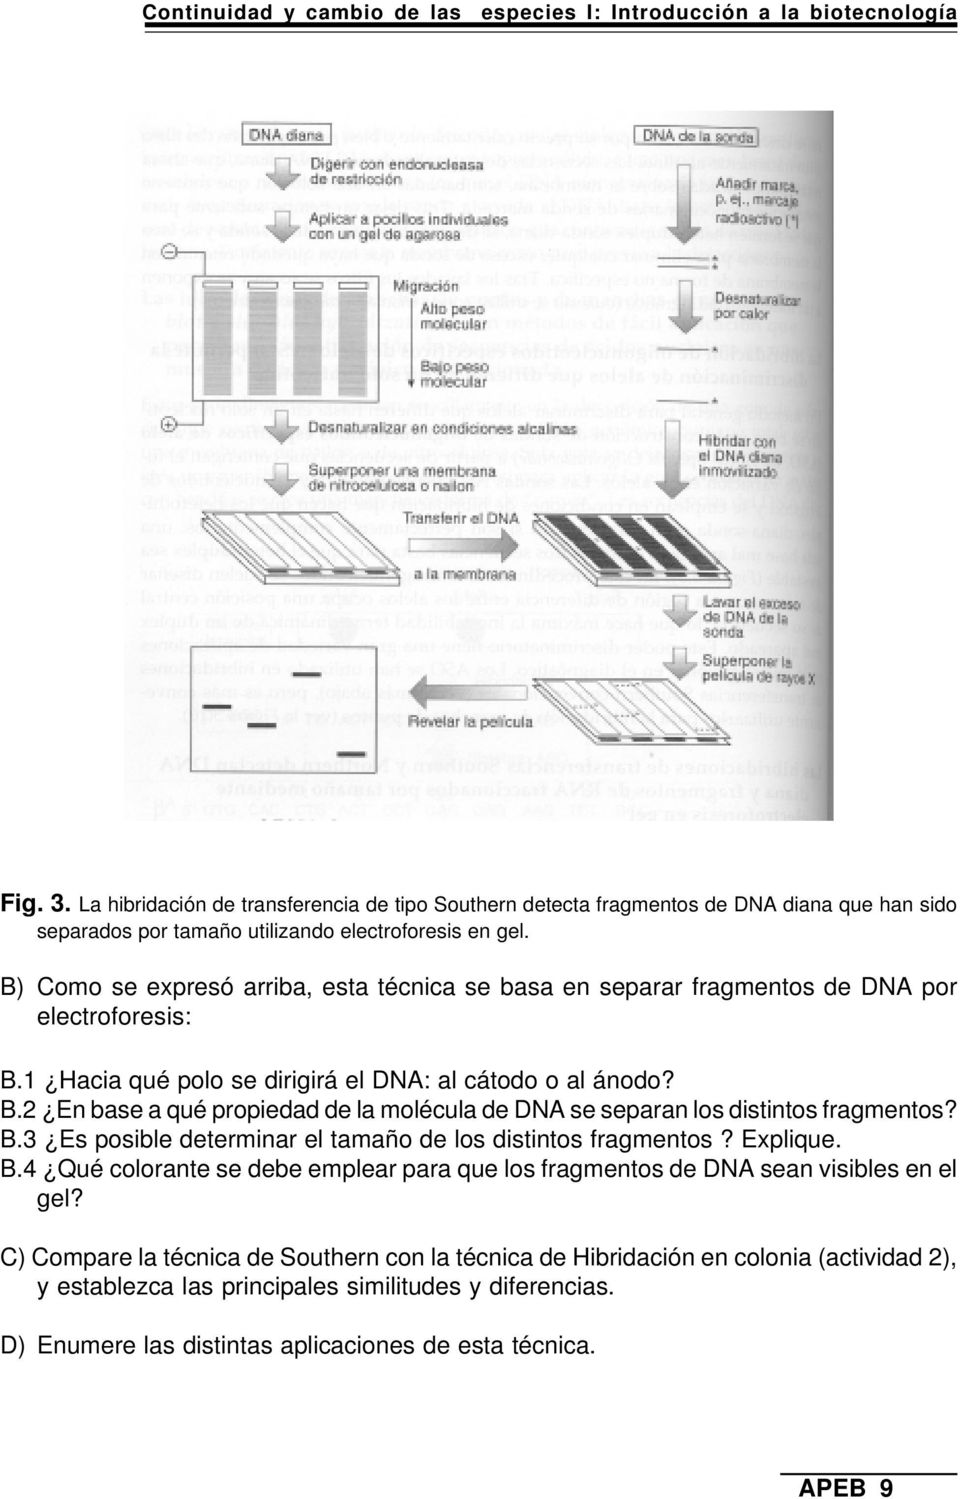 B) Como se expresó arriba, esta técnica se basa en separar fragmentos de DNA por electroforesis: B.1 Hacia qué polo se dirigirá el DNA: al cátodo o al ánodo? B.2 En base a qué propiedad de la molécula de DNA se separan los distintos fragmentos?